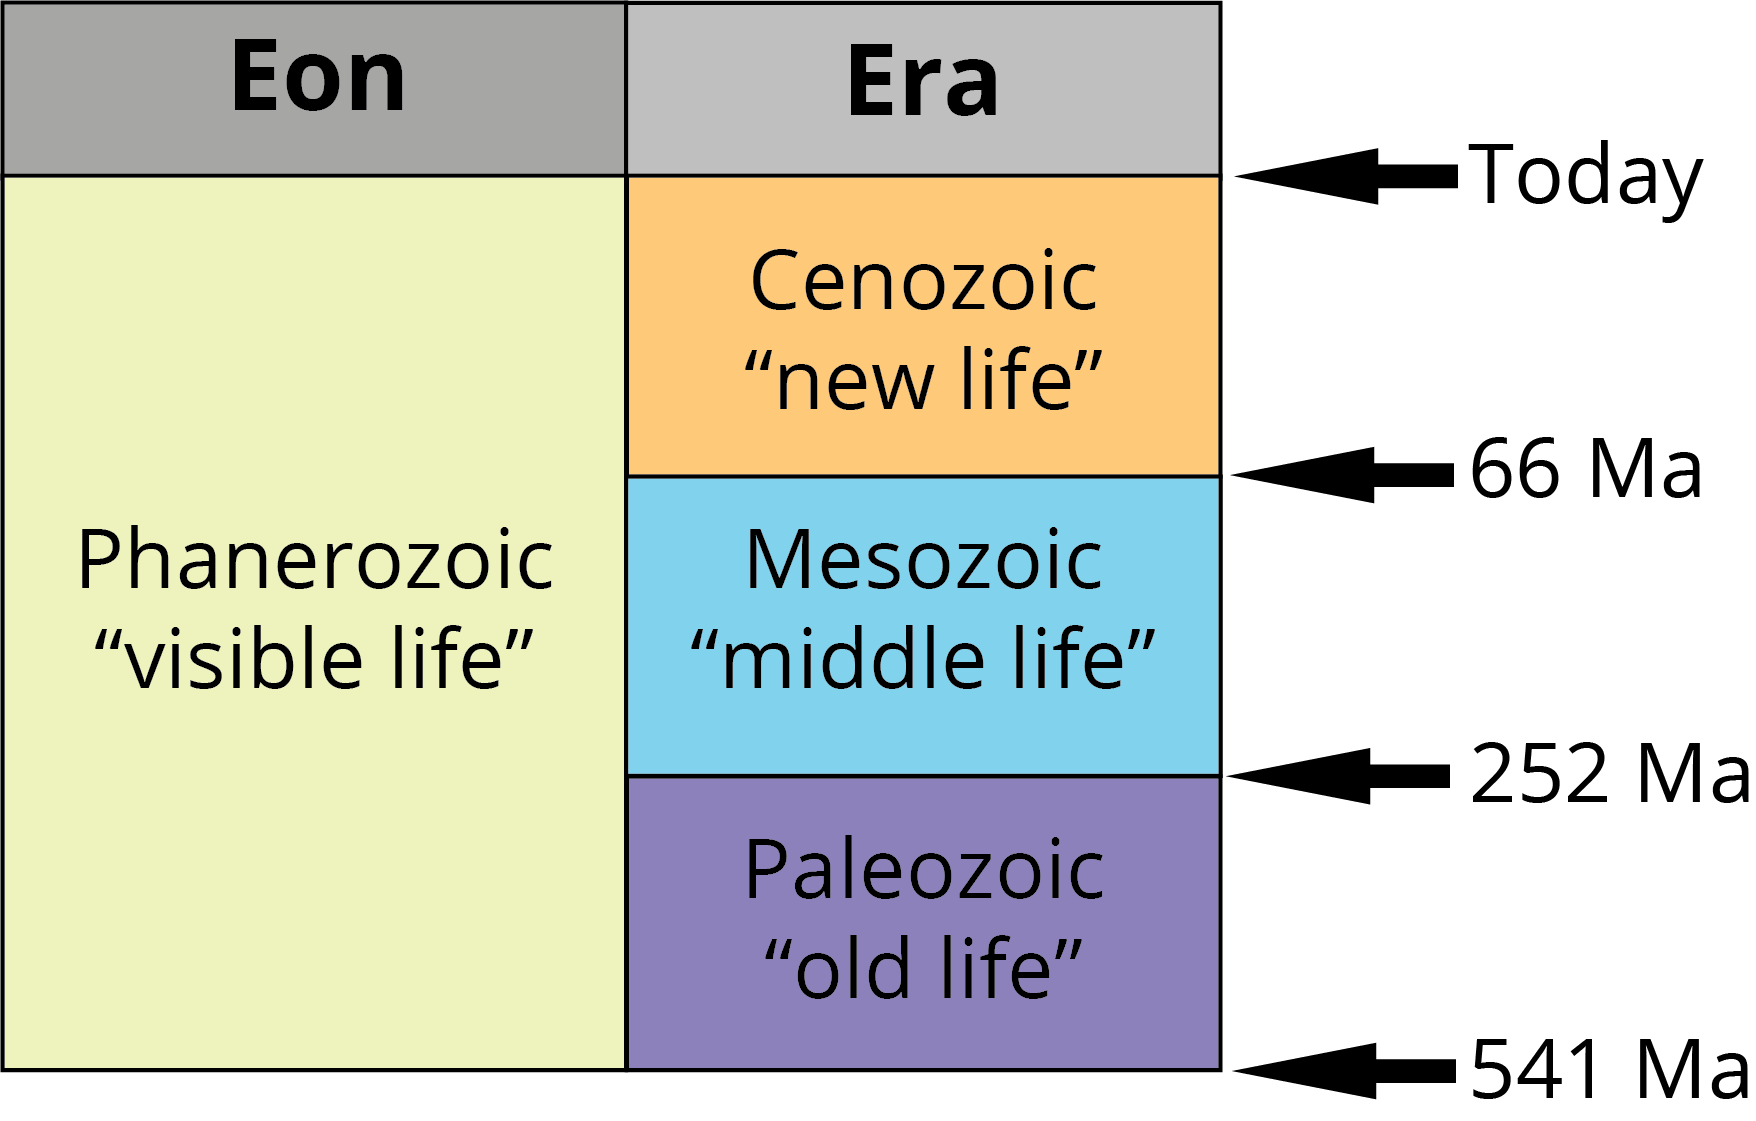 The Phanerozoic eon as described in the text.